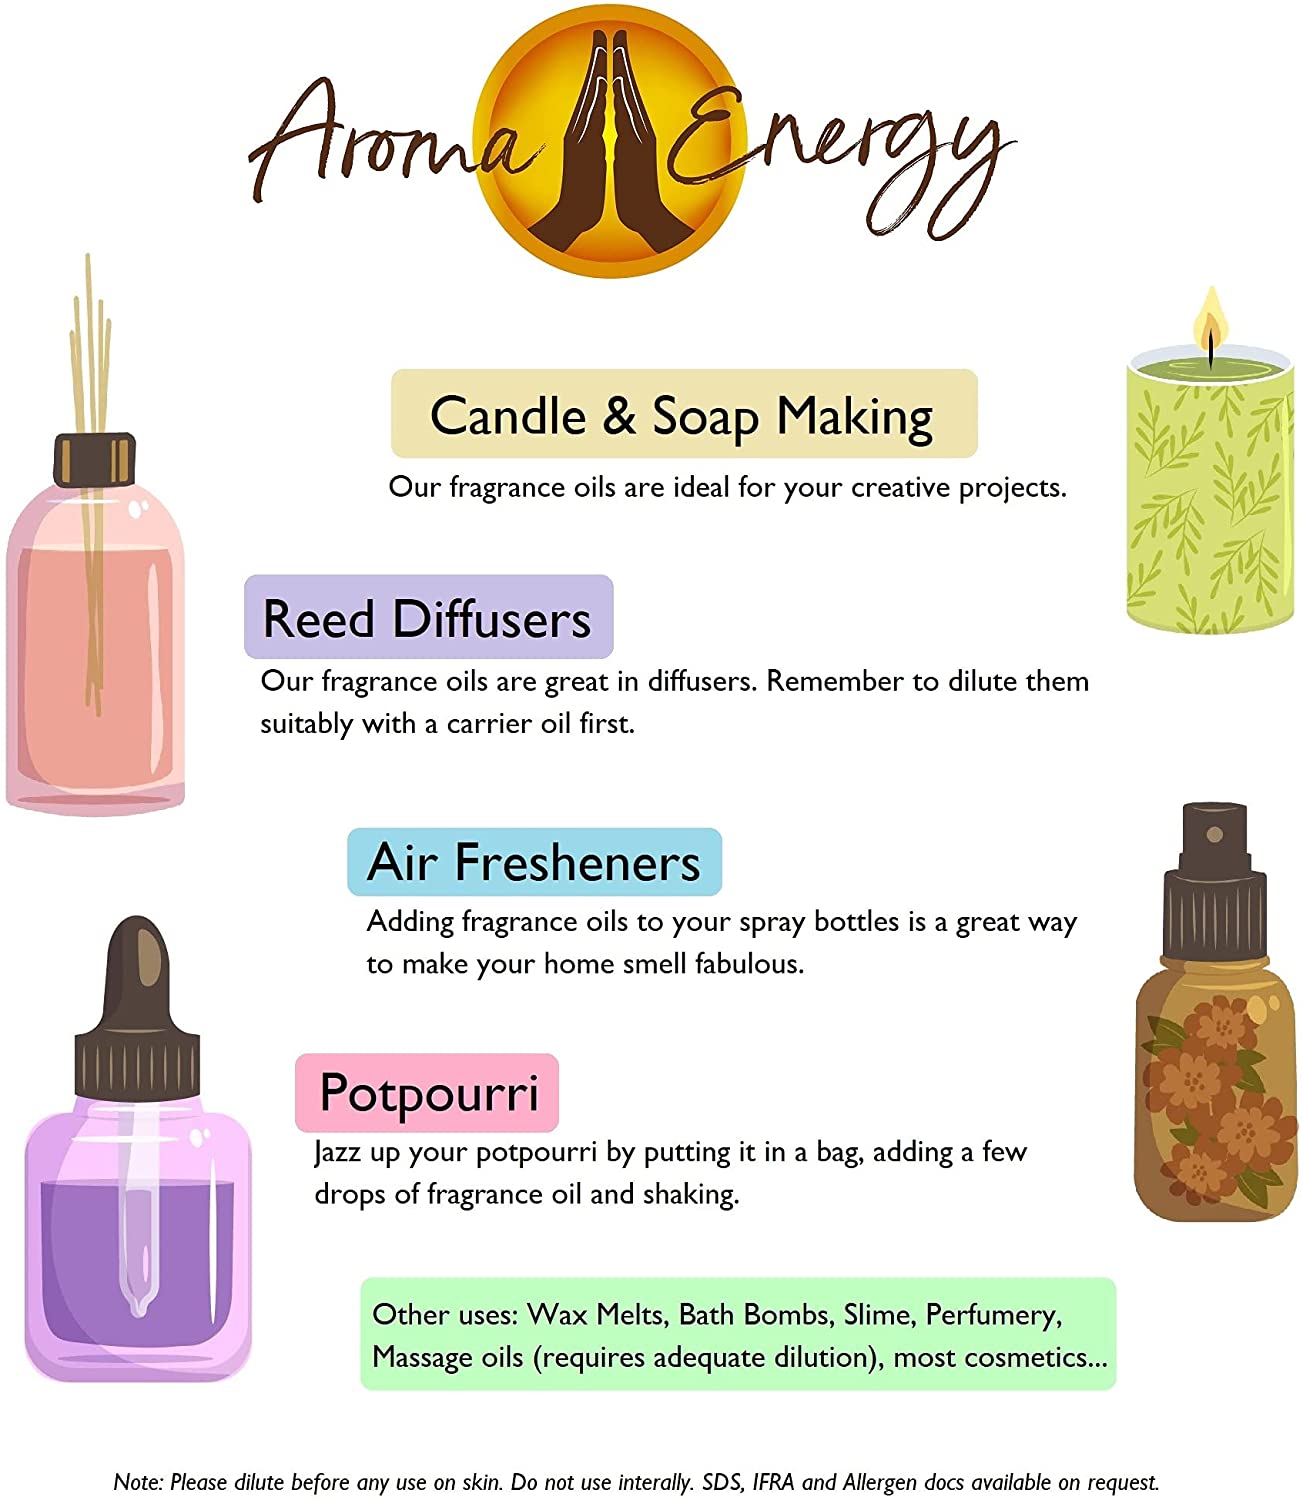 Myrrh Fragrance Oil - Aroma Energy